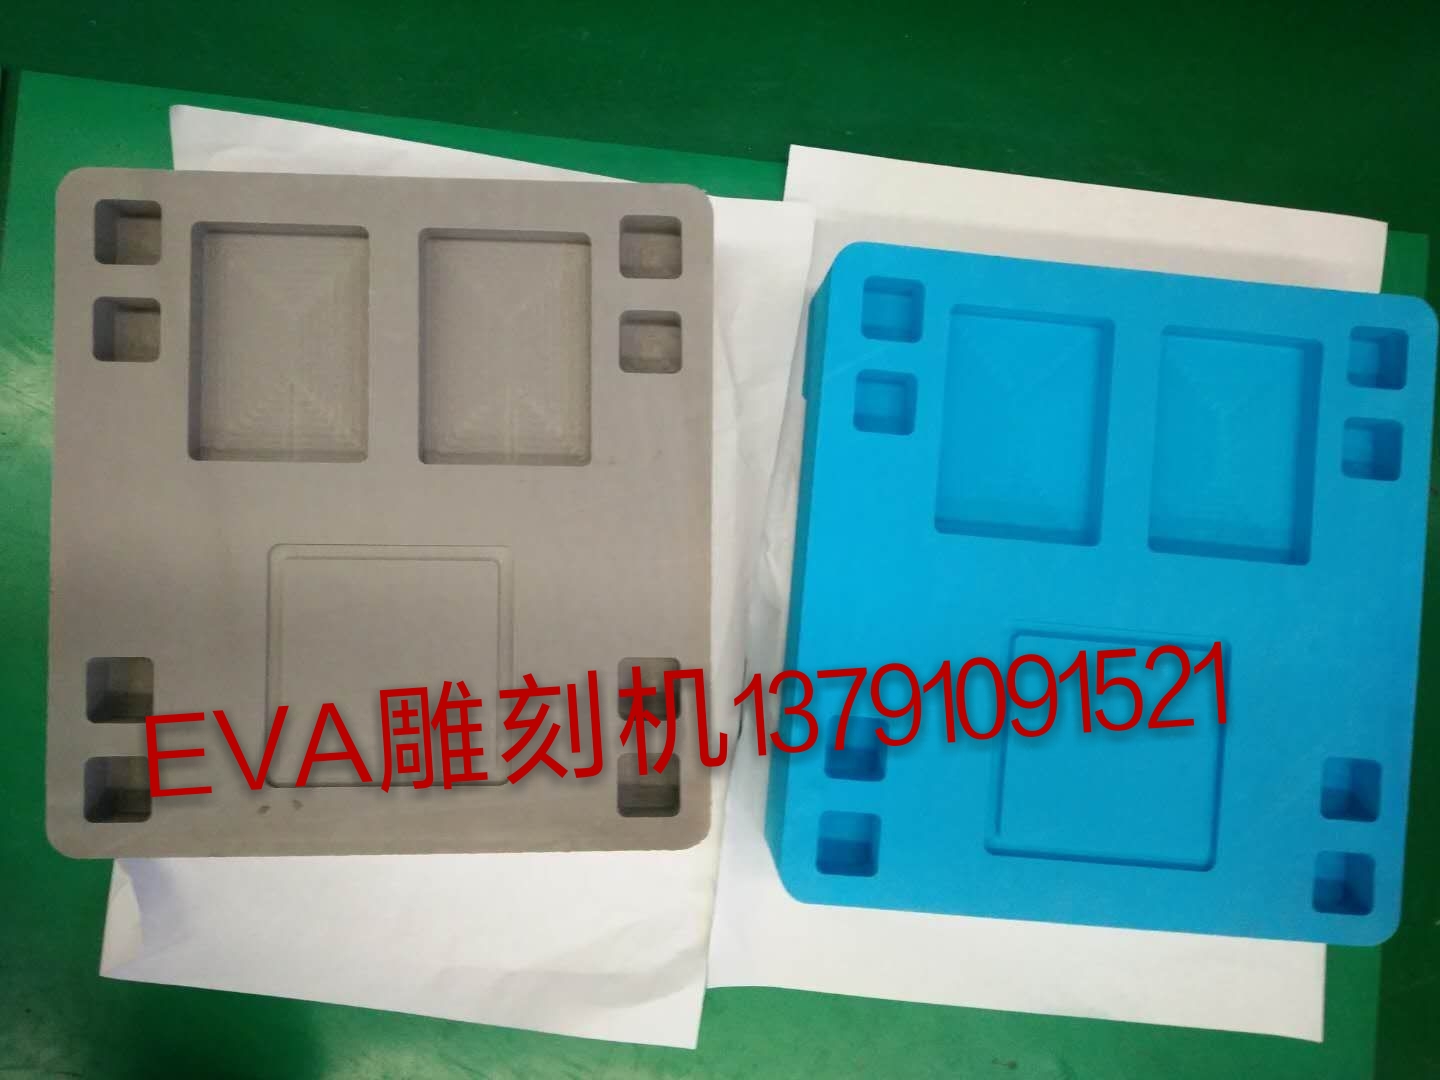 山东EVA雕刻机  厂家直销 售后无忧 EVA包装材料雕刻机 山东EVA雕刻机